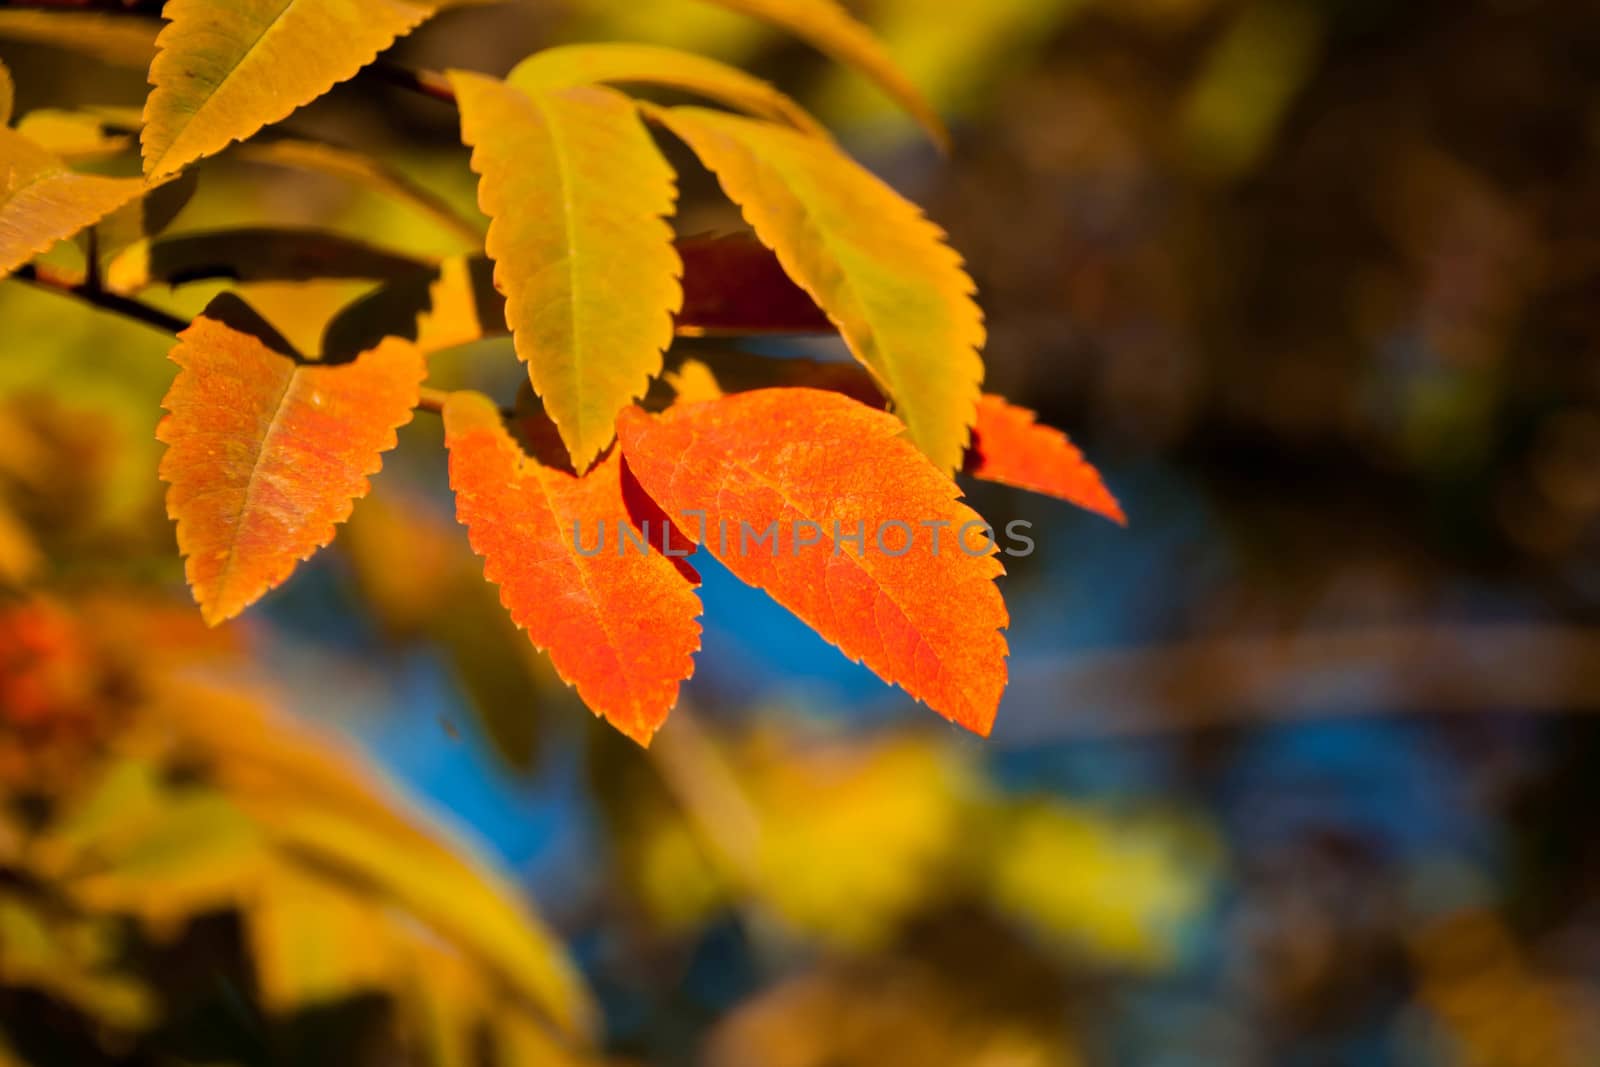 golden orange rowan tree leaves in the sunlight by alexx60